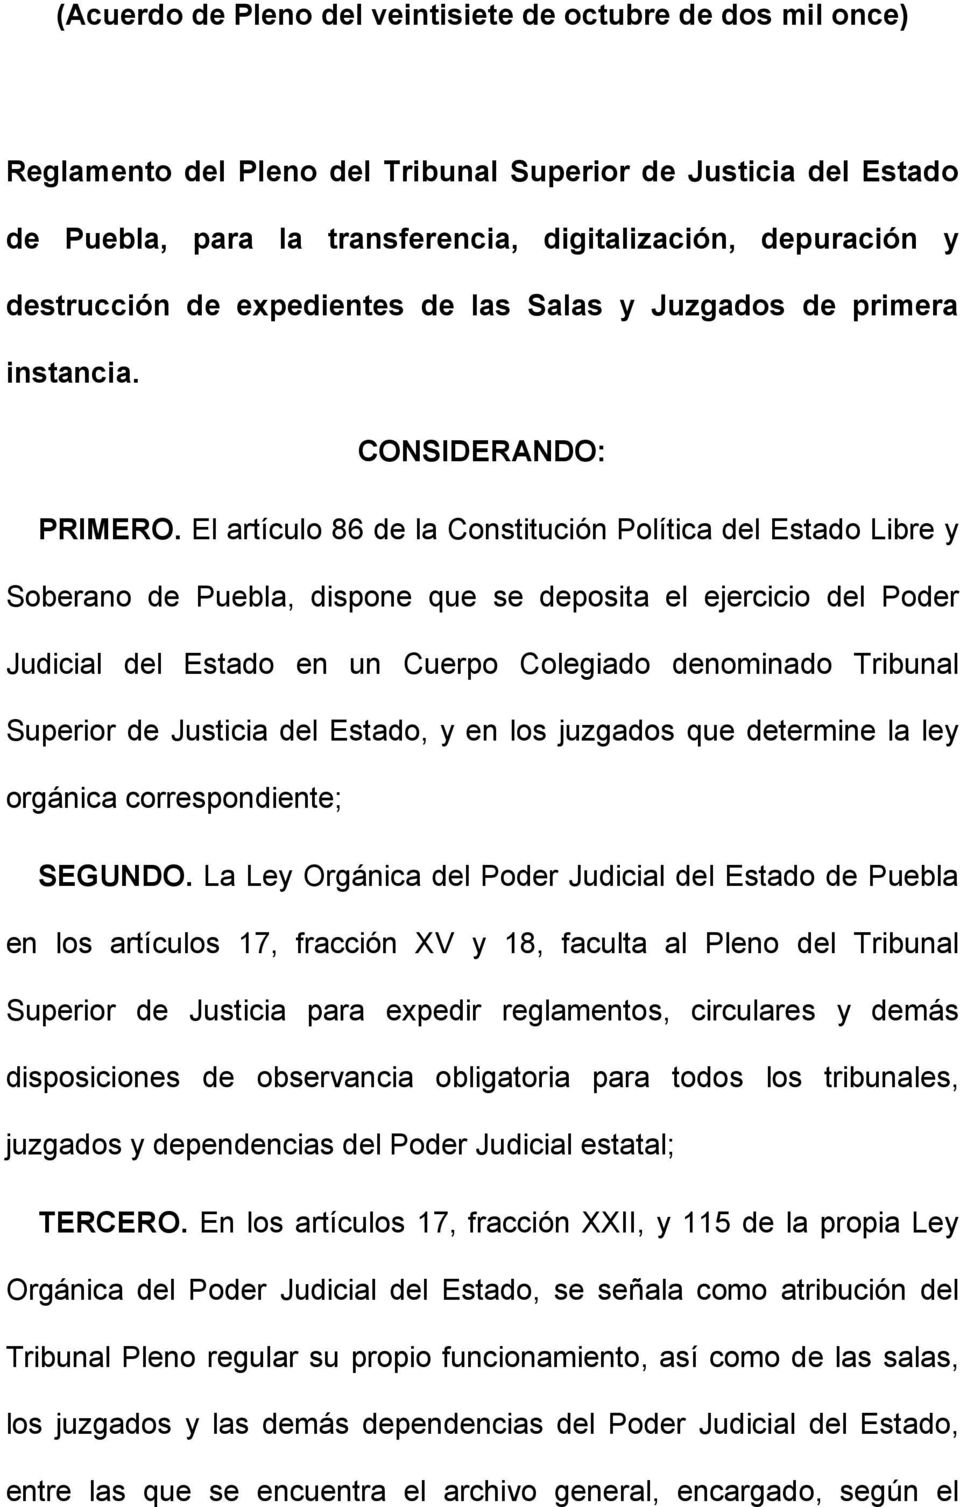 El artículo 86 de la Constitución Política del Estado Libre y Soberano de Puebla, dispone que se deposita el ejercicio del Poder Judicial del Estado en un Cuerpo Colegiado denominado Tribunal